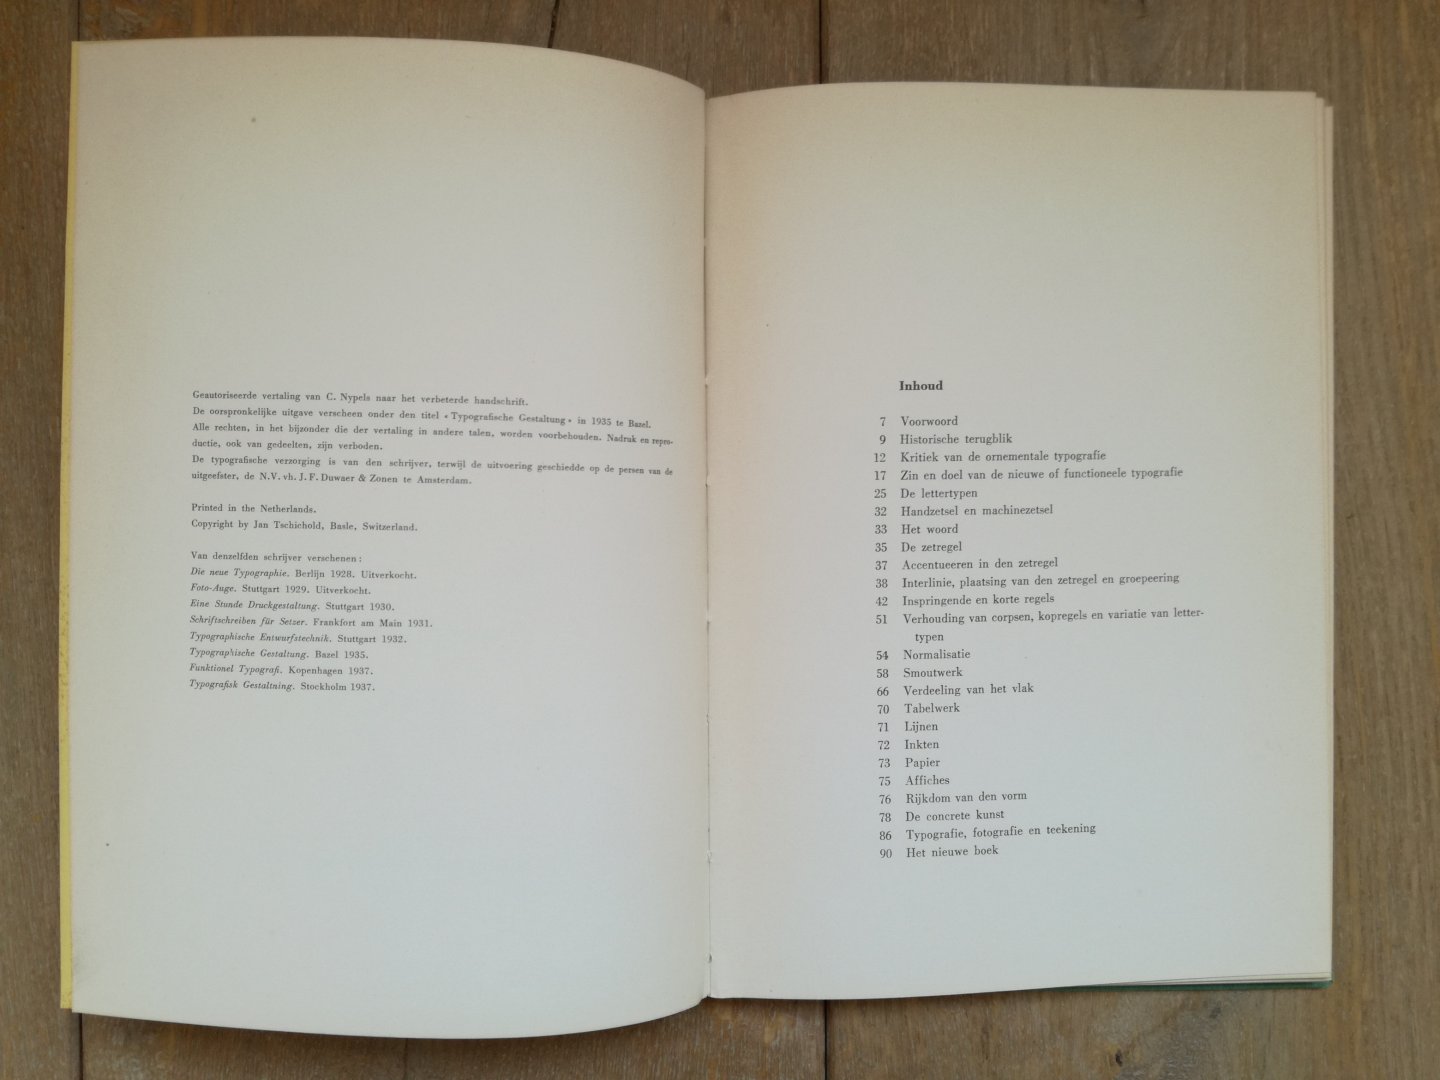 Tschichold, Jan / Warde, Beatrice - Typografische vormgeving / Het ontstaan van het boek